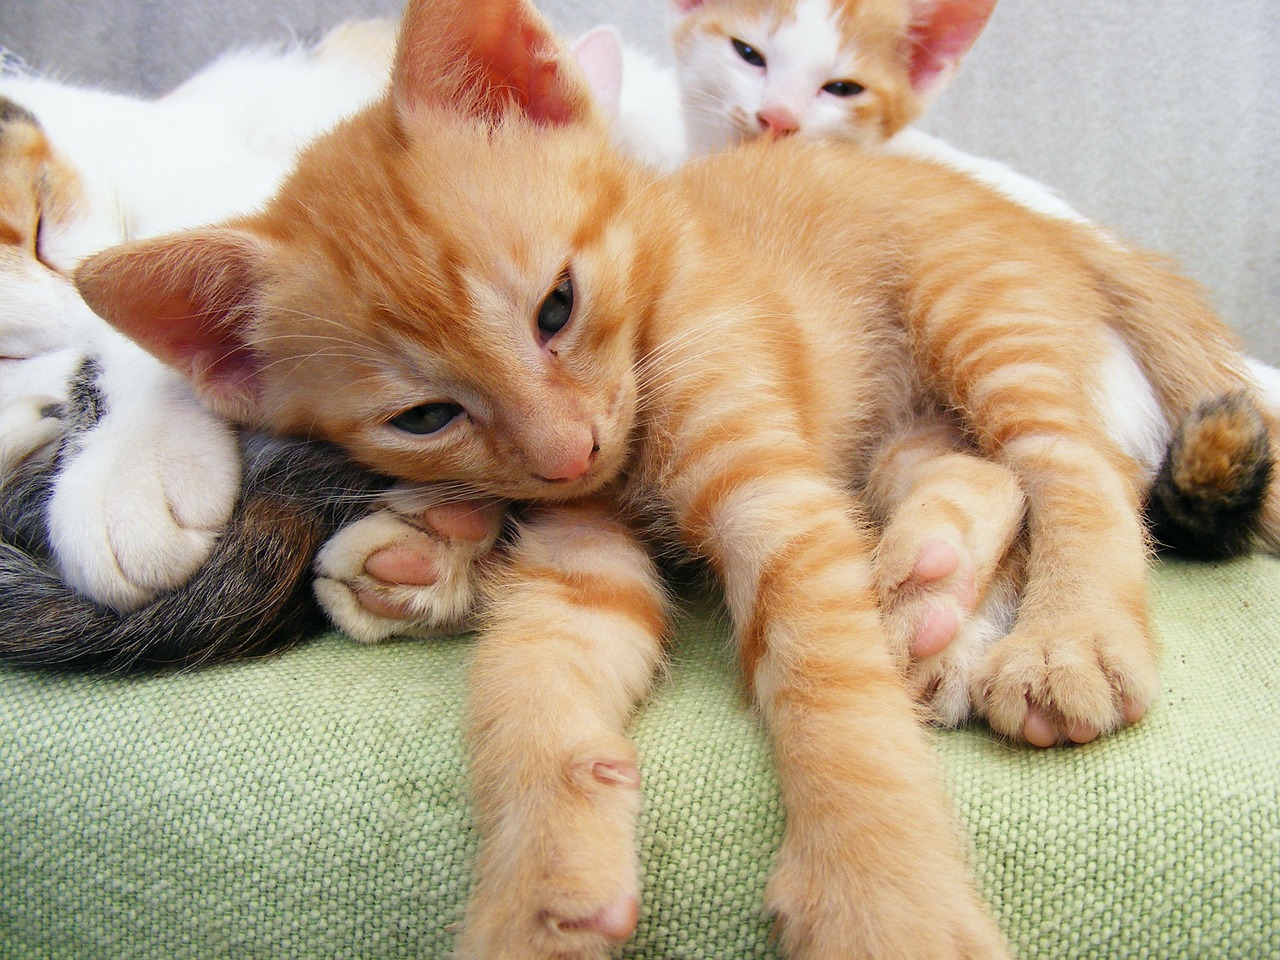 Shelter_orange kitten